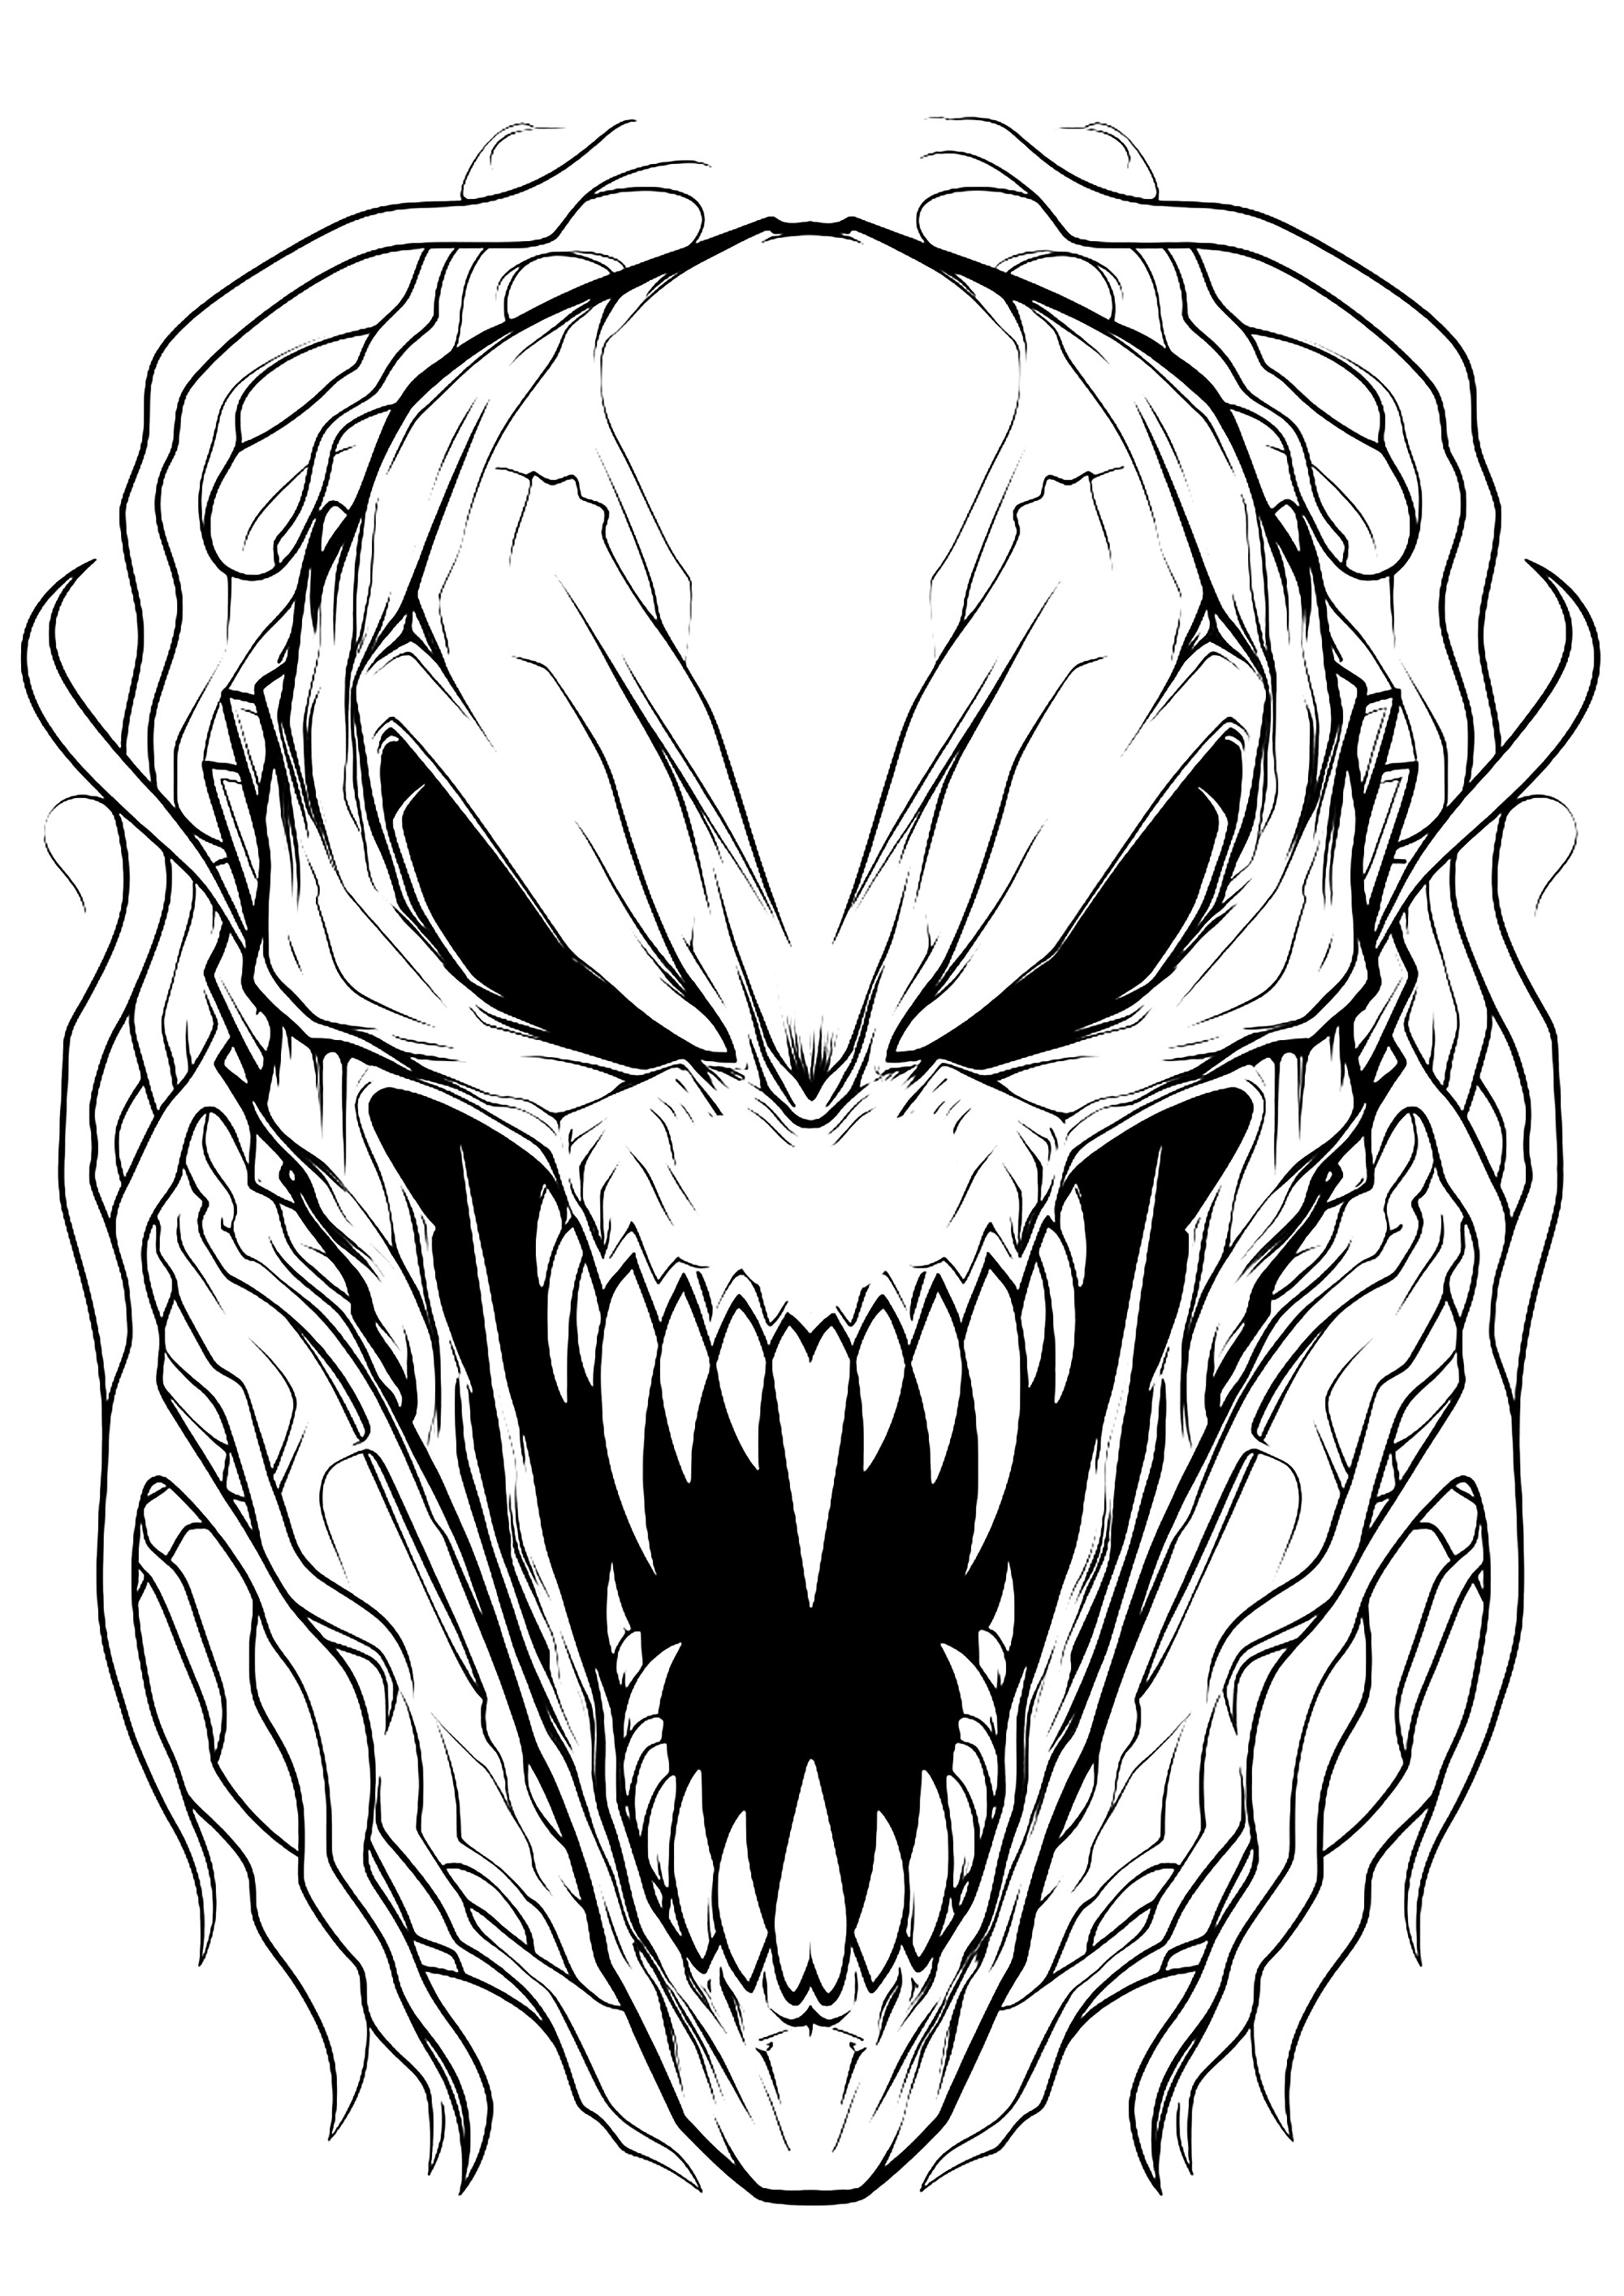 La cara de Venom. Colores de miedo